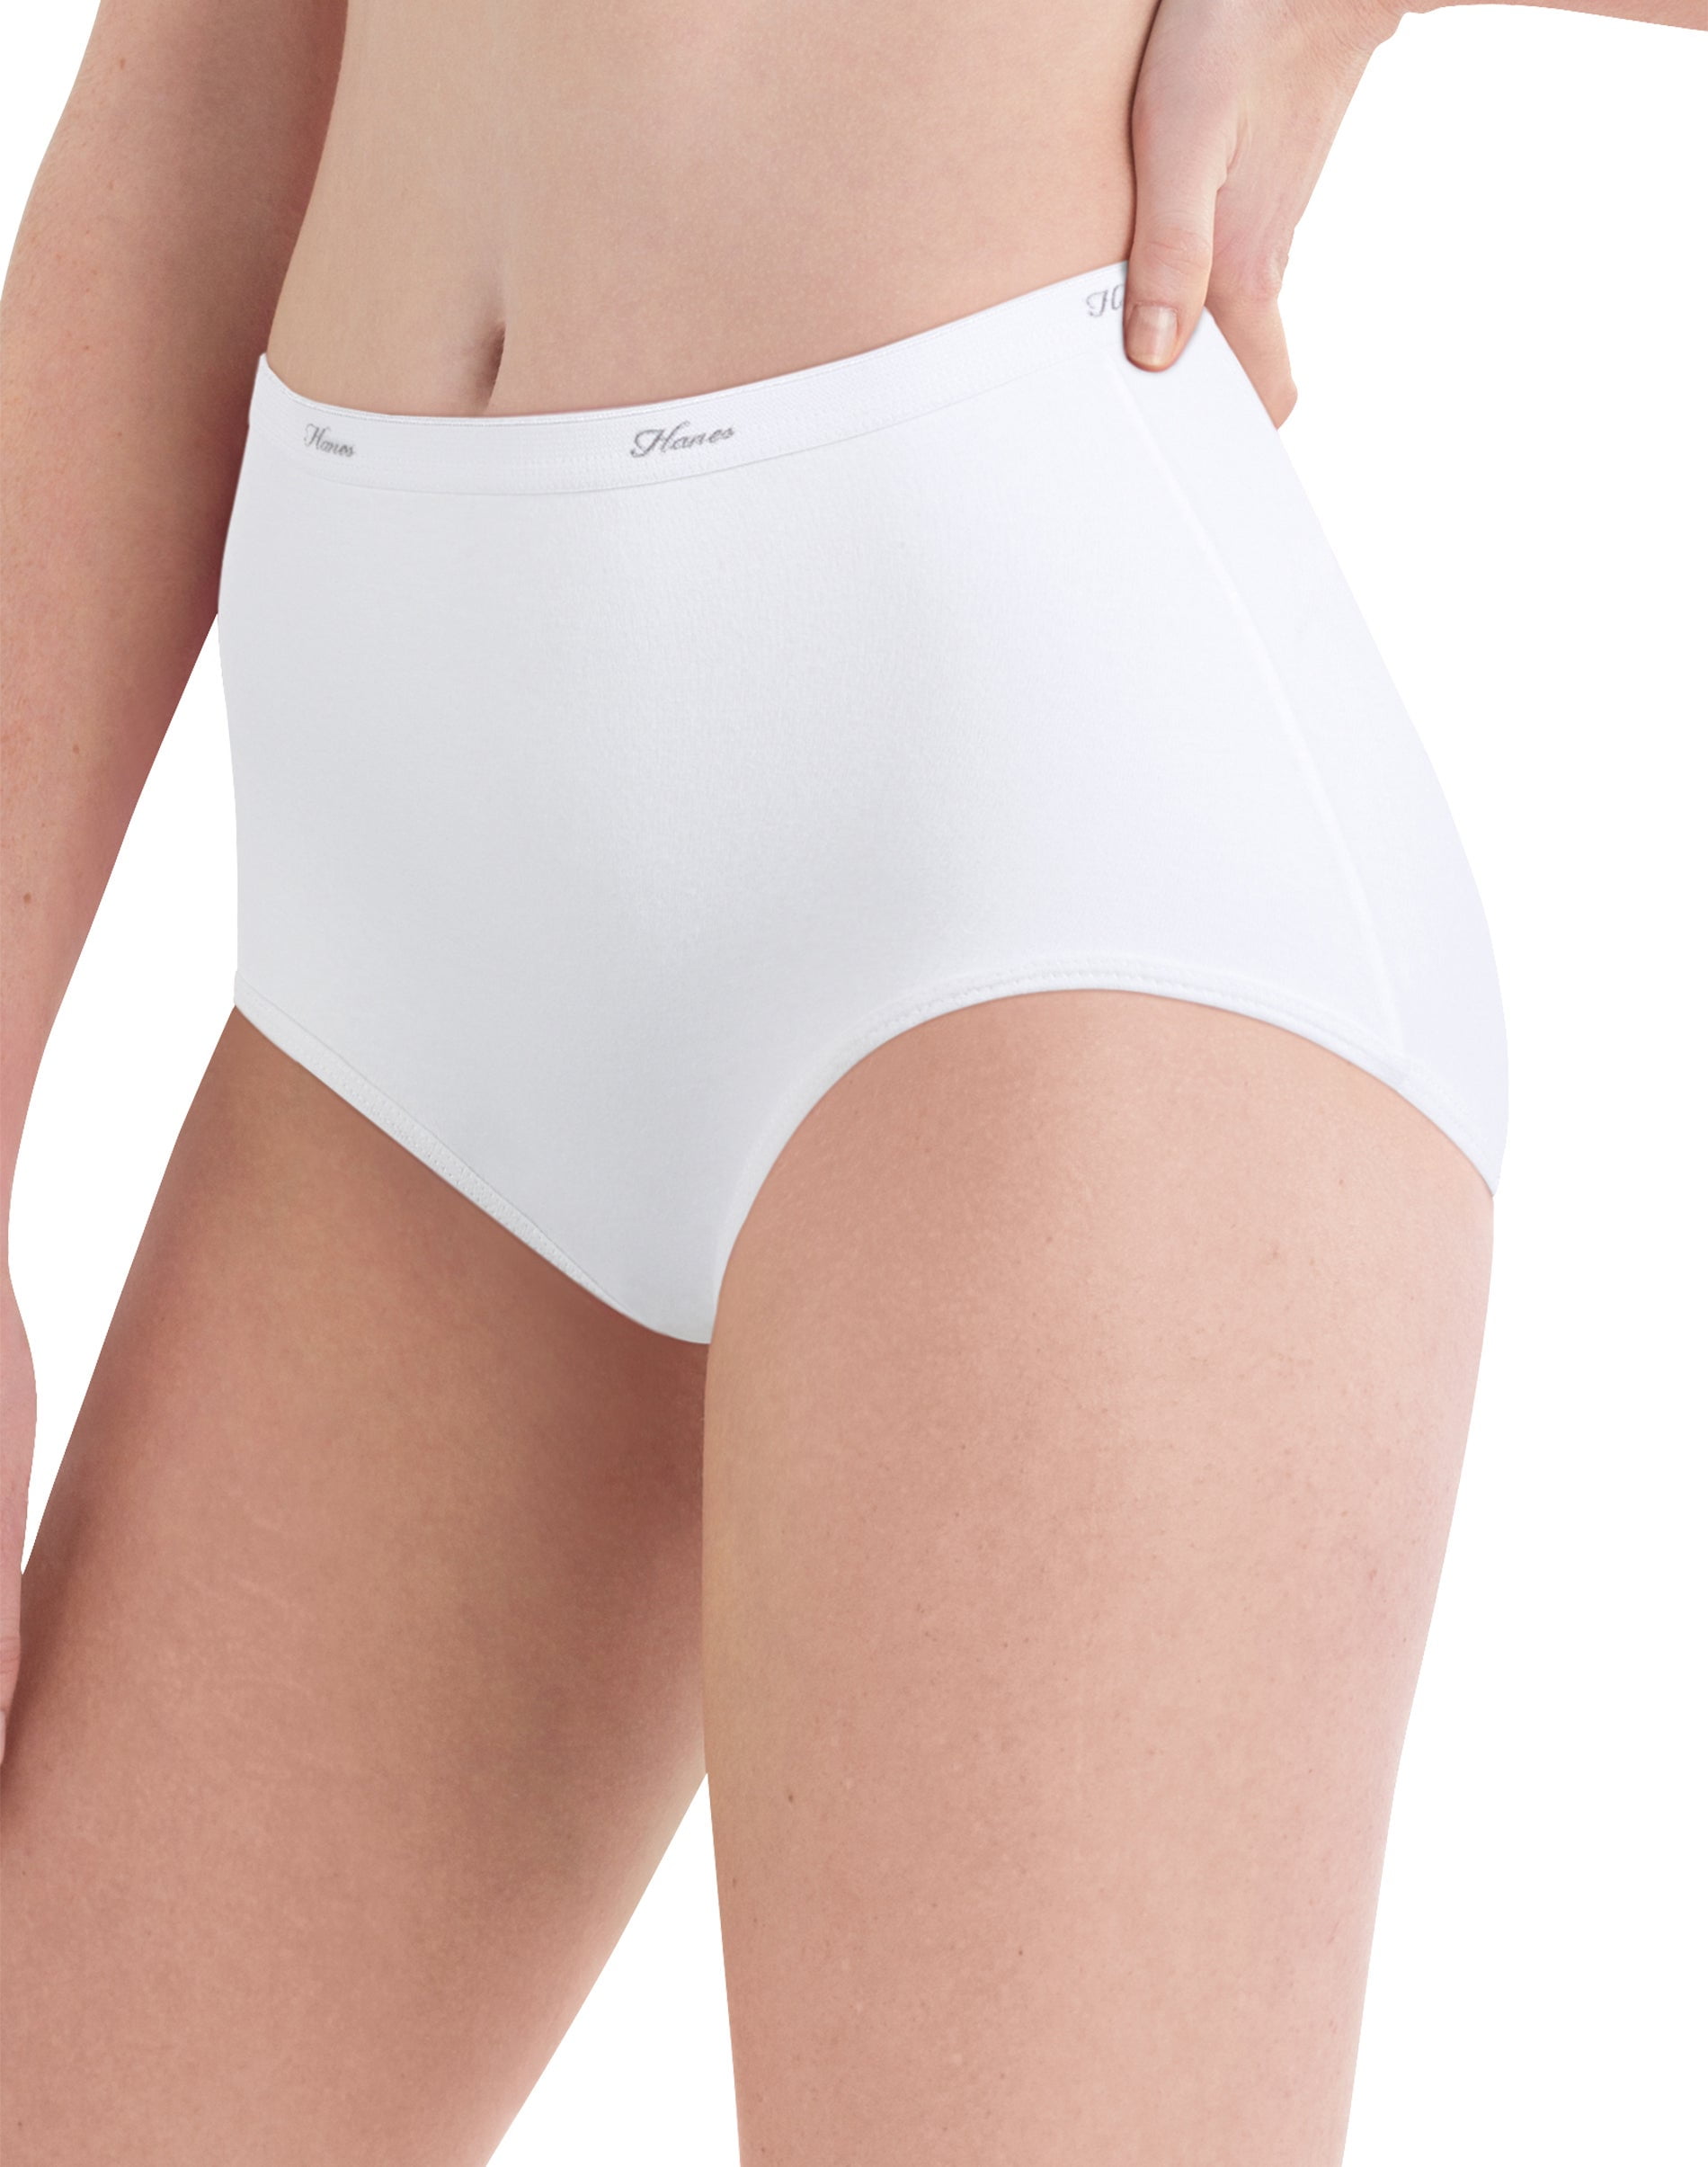 Hanes Women's High-Waisted Brief Underwear Pack, Moisture-Wicking